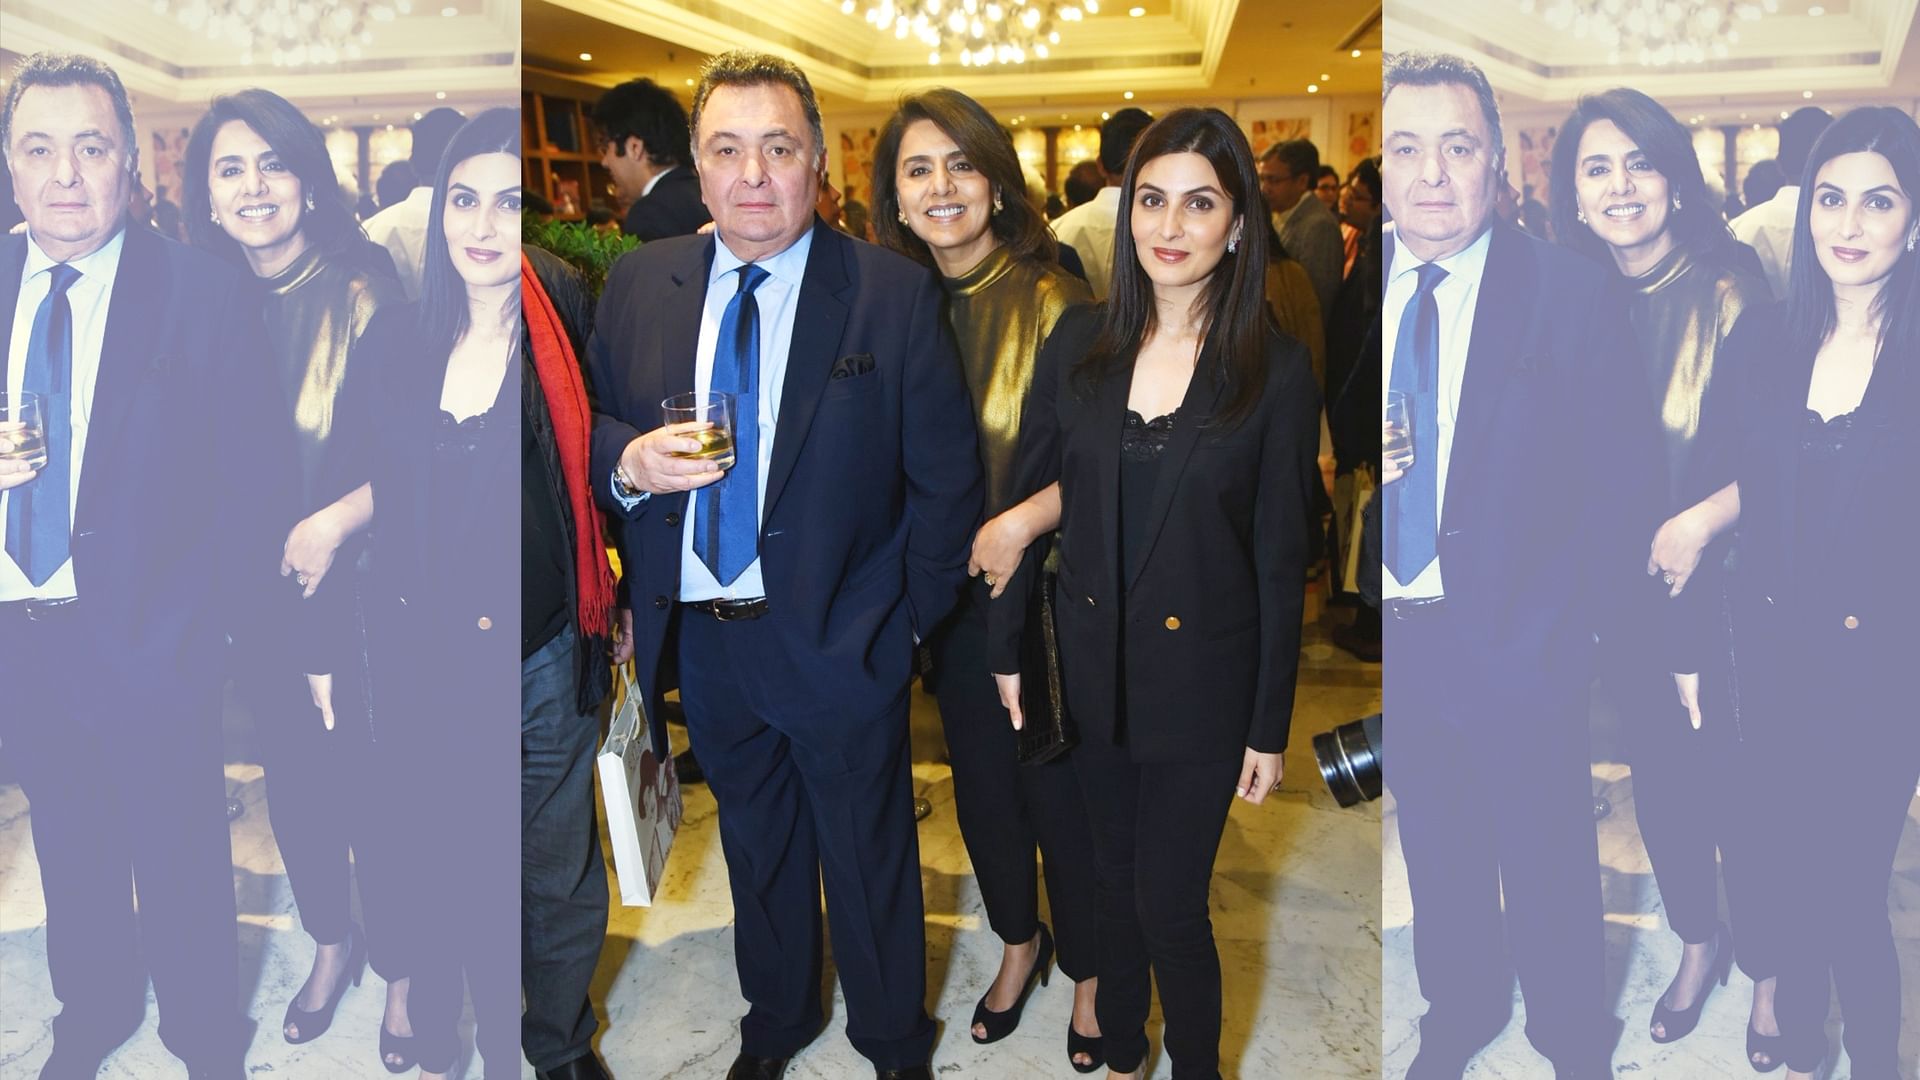 Rishi Kapoor, Neetu Singh and Riddhima Kapoor Sahani at the Raj Kapoor book launch in Delhi.